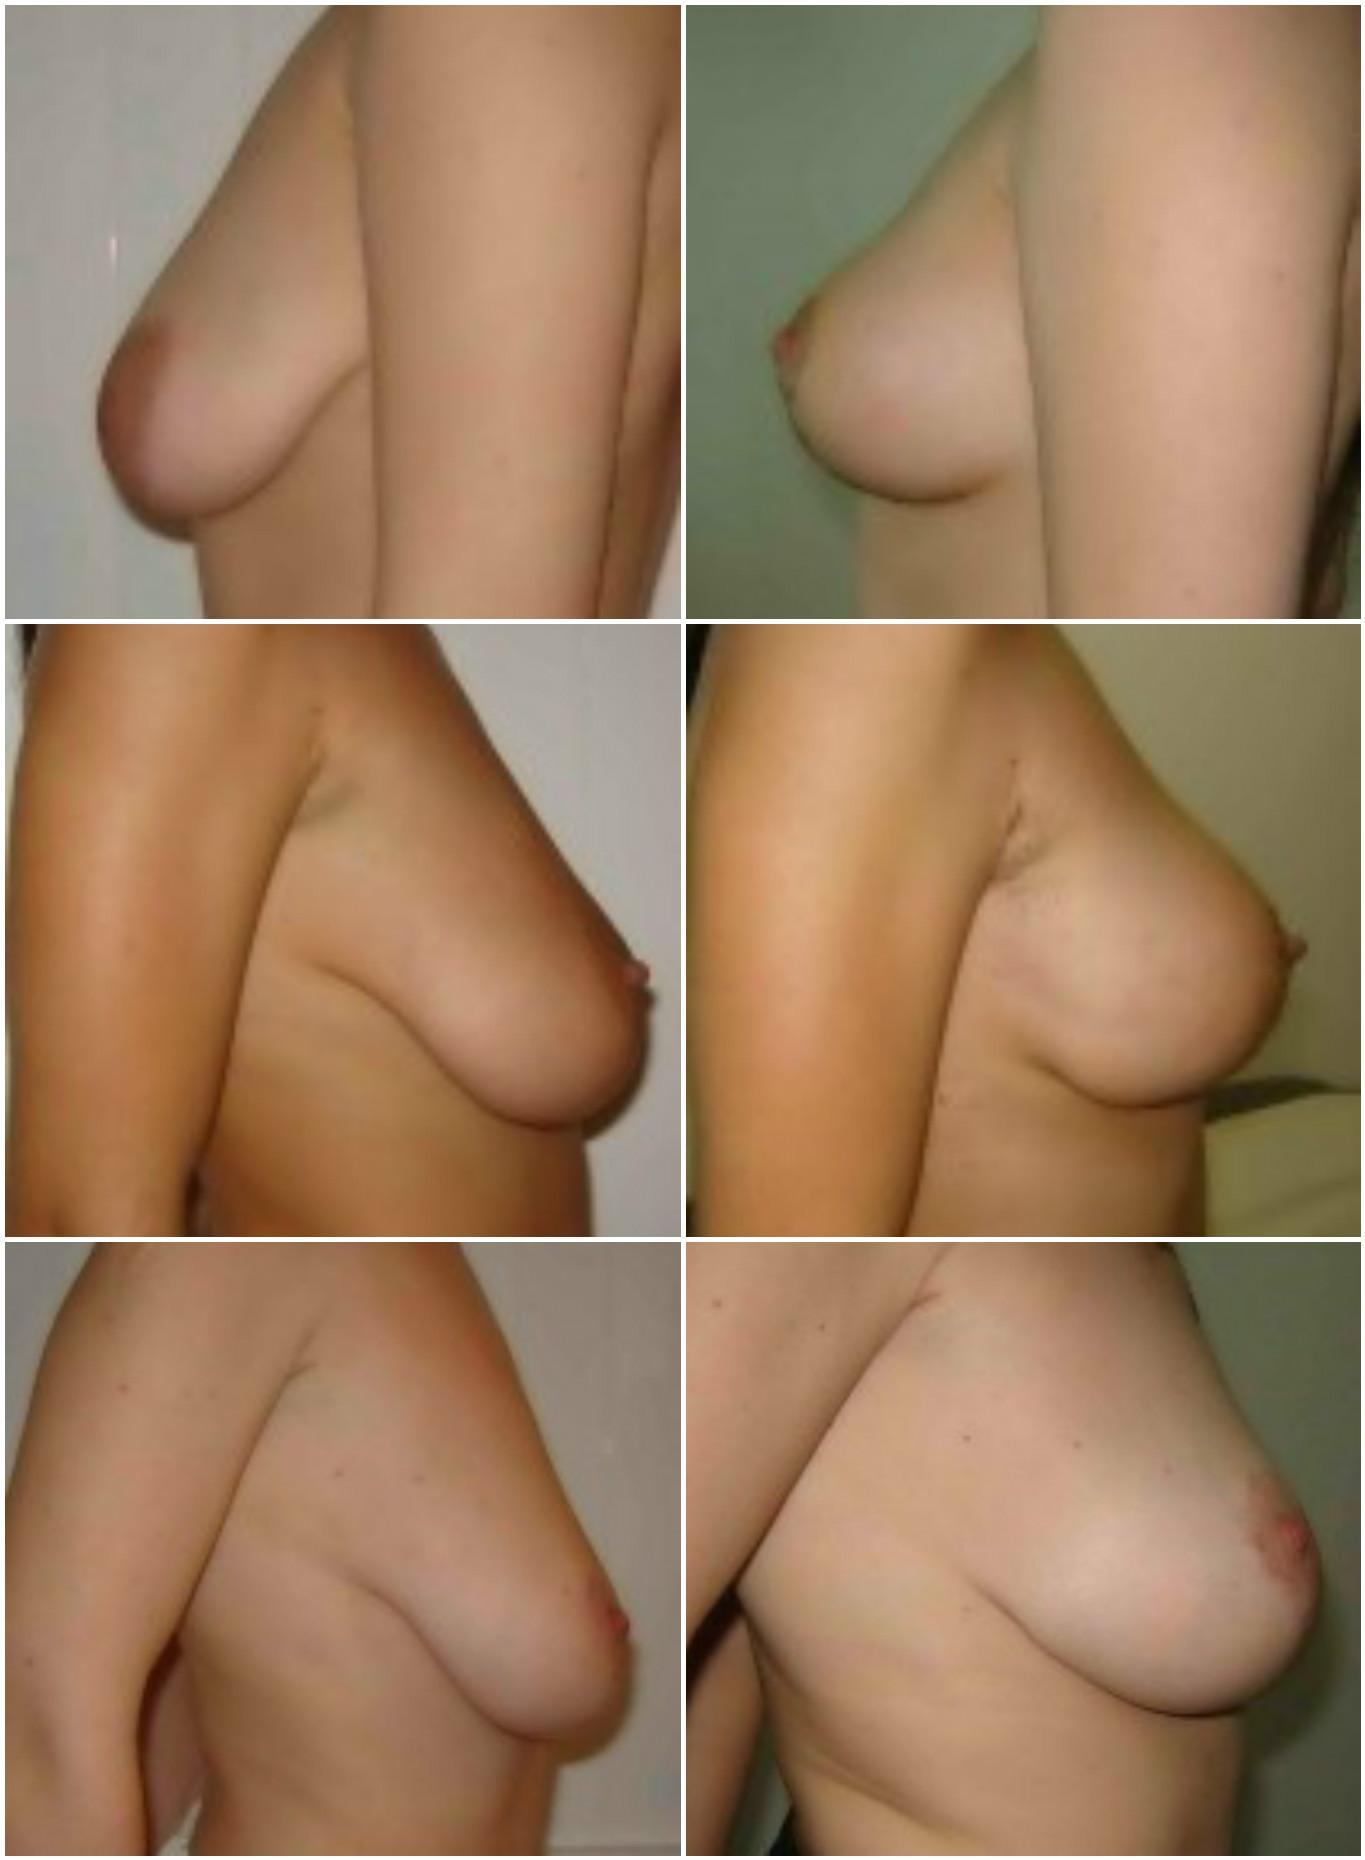 Micșorarea sânilor prin reducția pielii și repoziționarea complexului areolă-mamelon